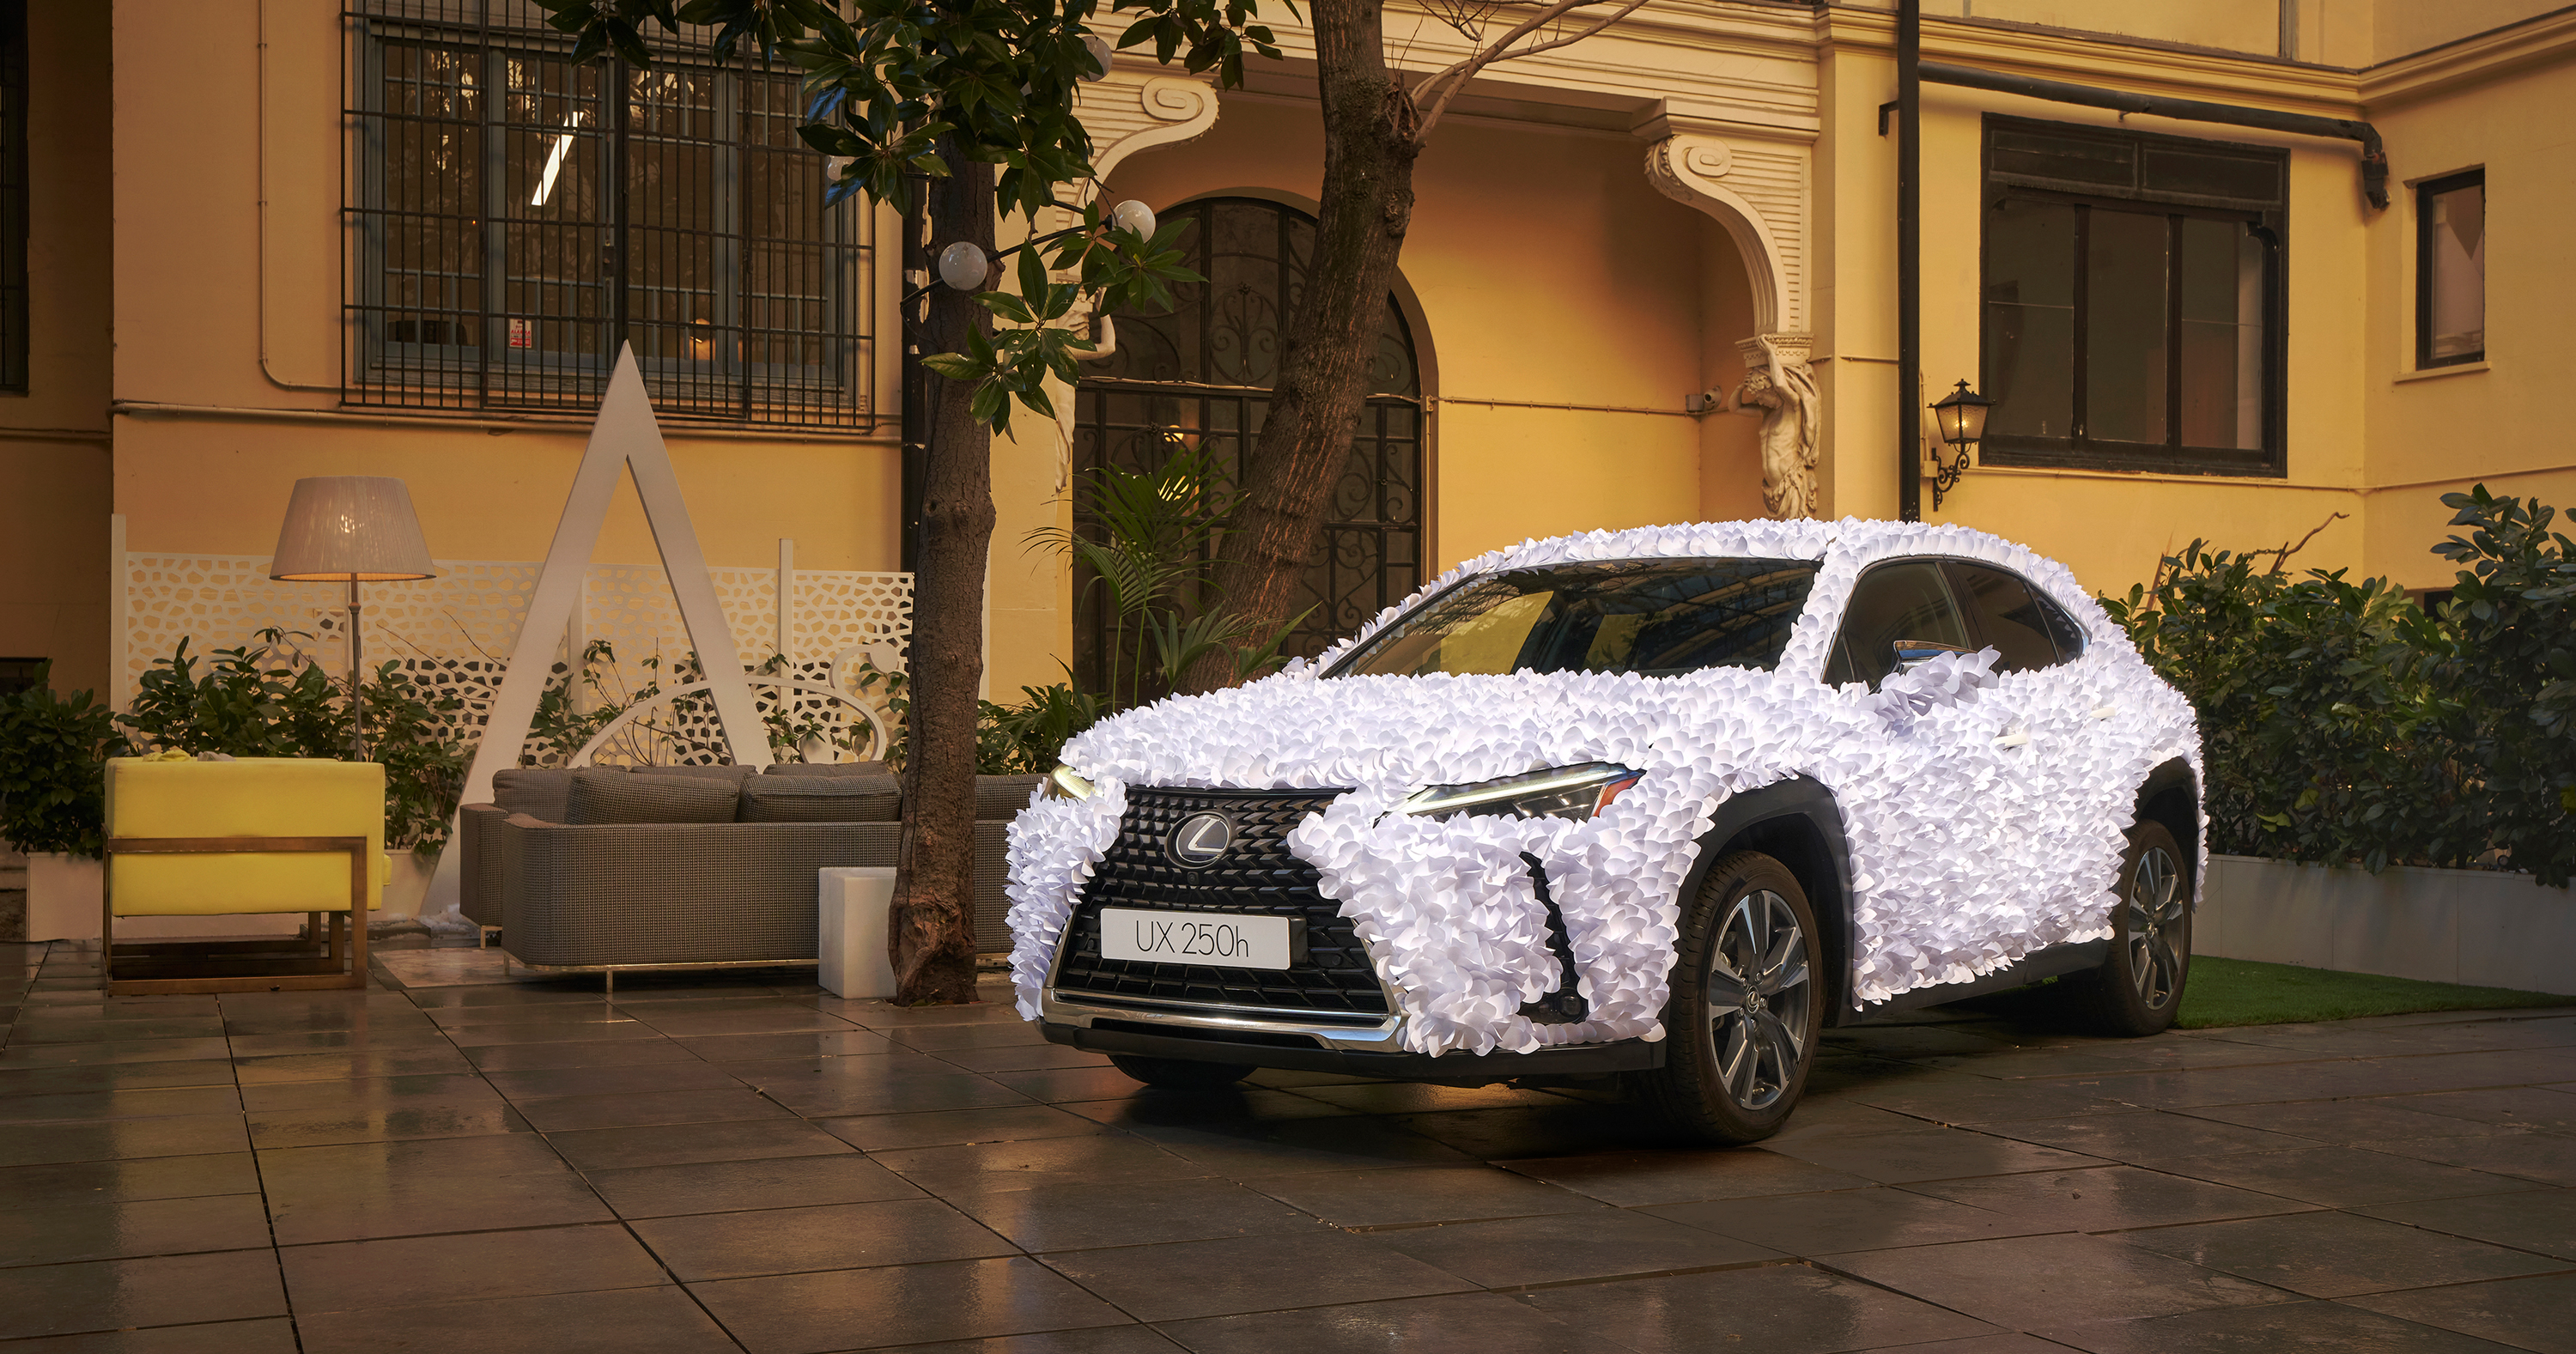 Galería: Lexus desvela el UX Art Car 2021, ‘Jardín Zen’, del estudio valenciano Clap Studio